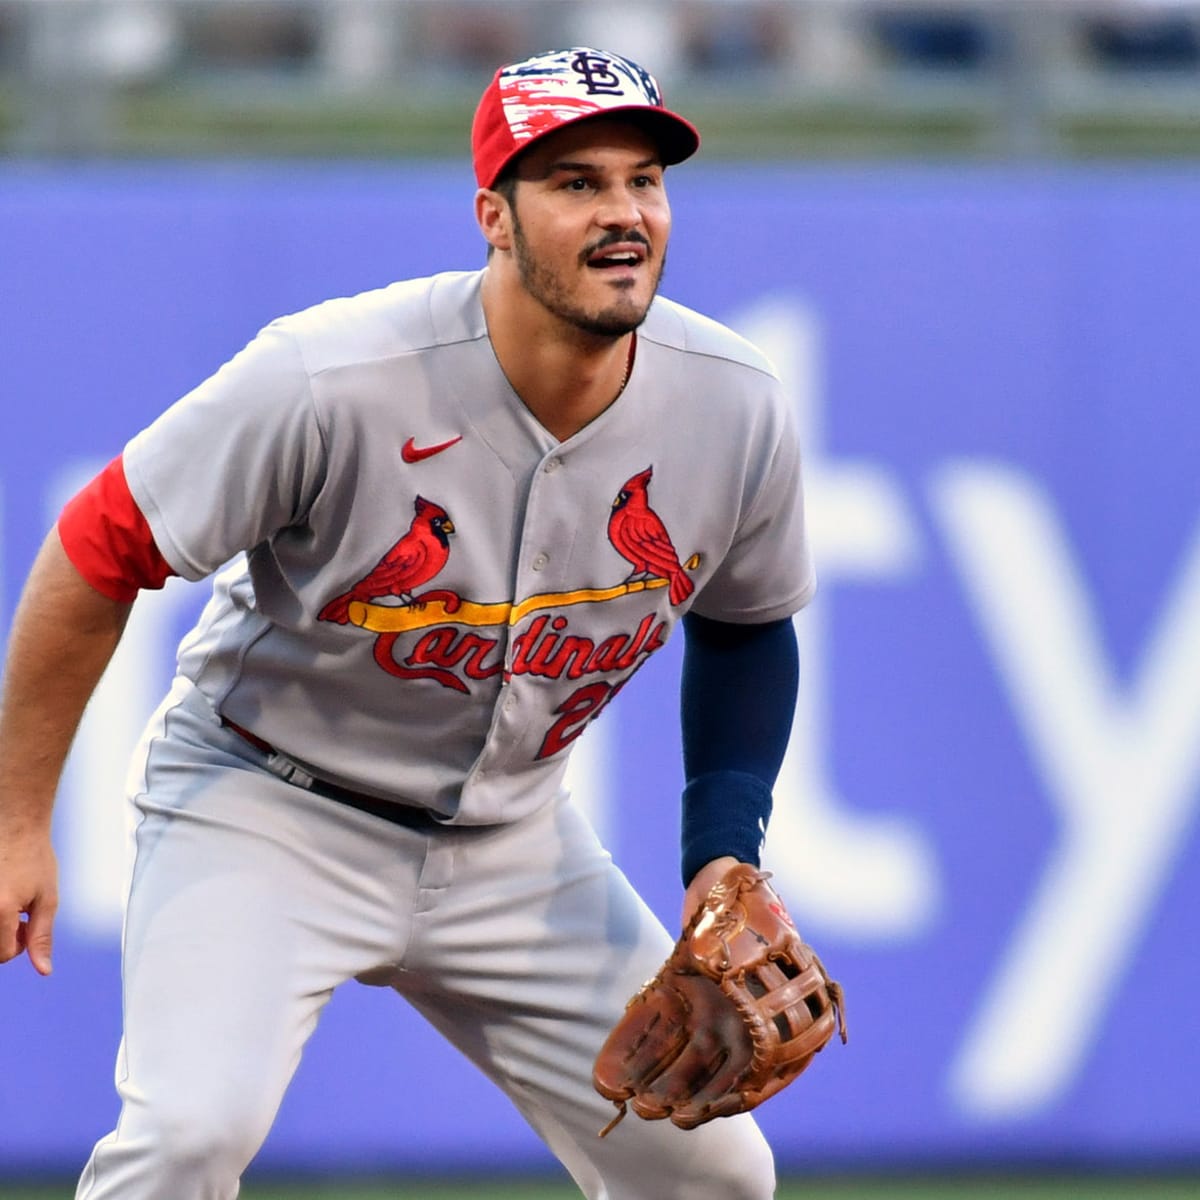 Nolan Arenado Makes Case for Cardinals Adding at Trade Deadline